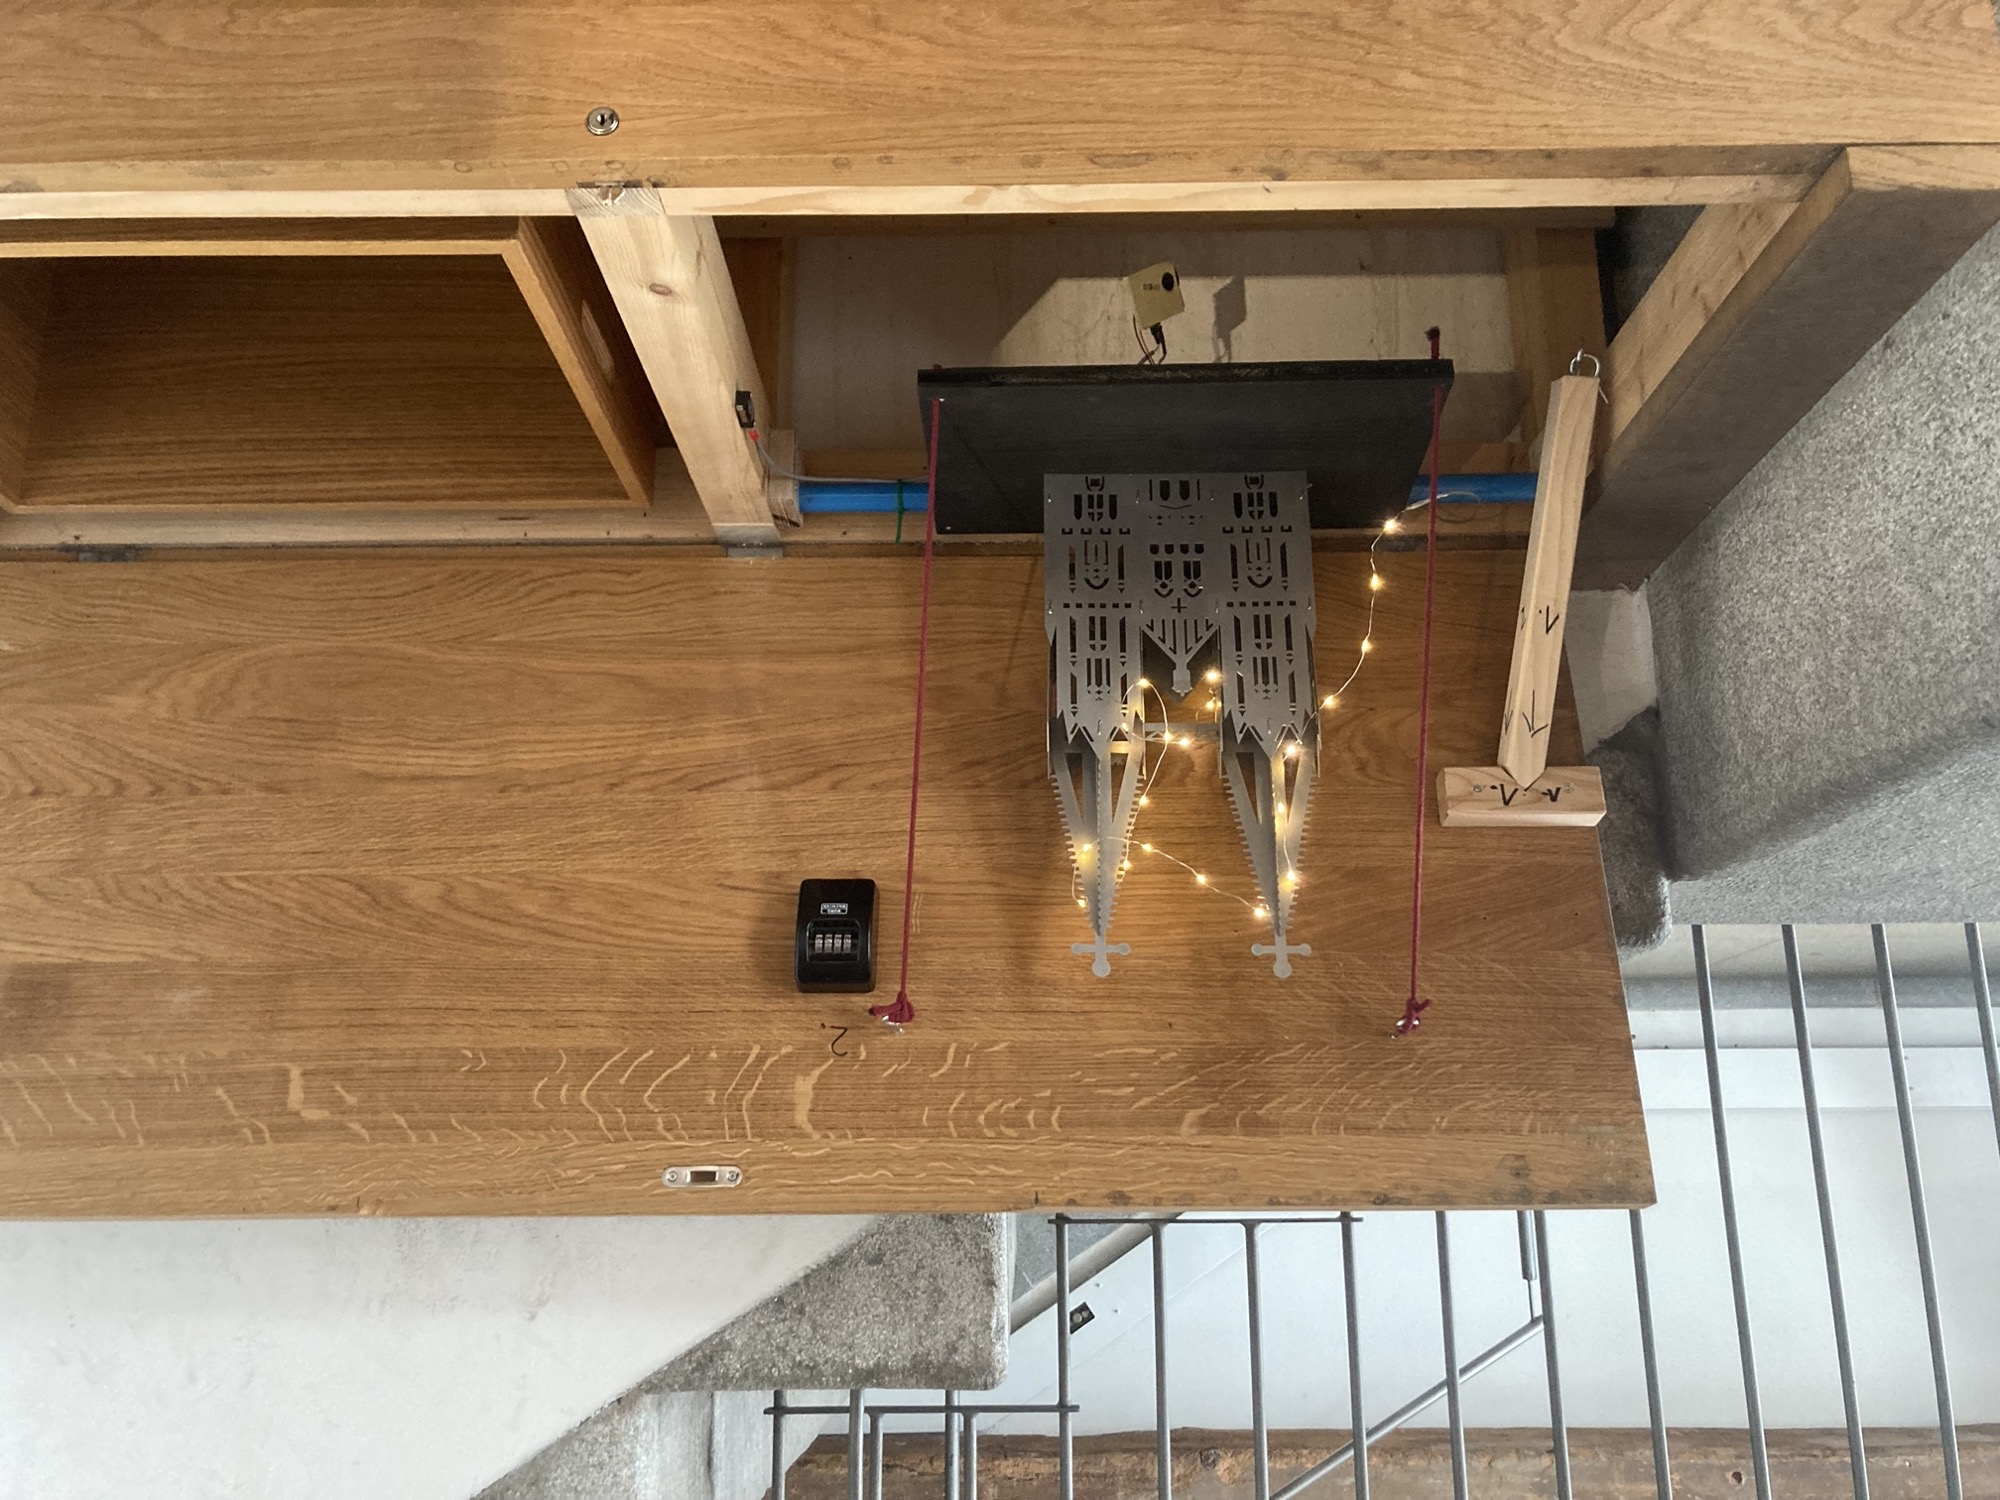 eine breite Holzbox mit offenem Deckel neben einer Treppe, ein Metallmodell des Regensburger Doms ist von einer kleinen LED-Lichterkette beleuchtet, daneben ein kleines Zahlenschloss